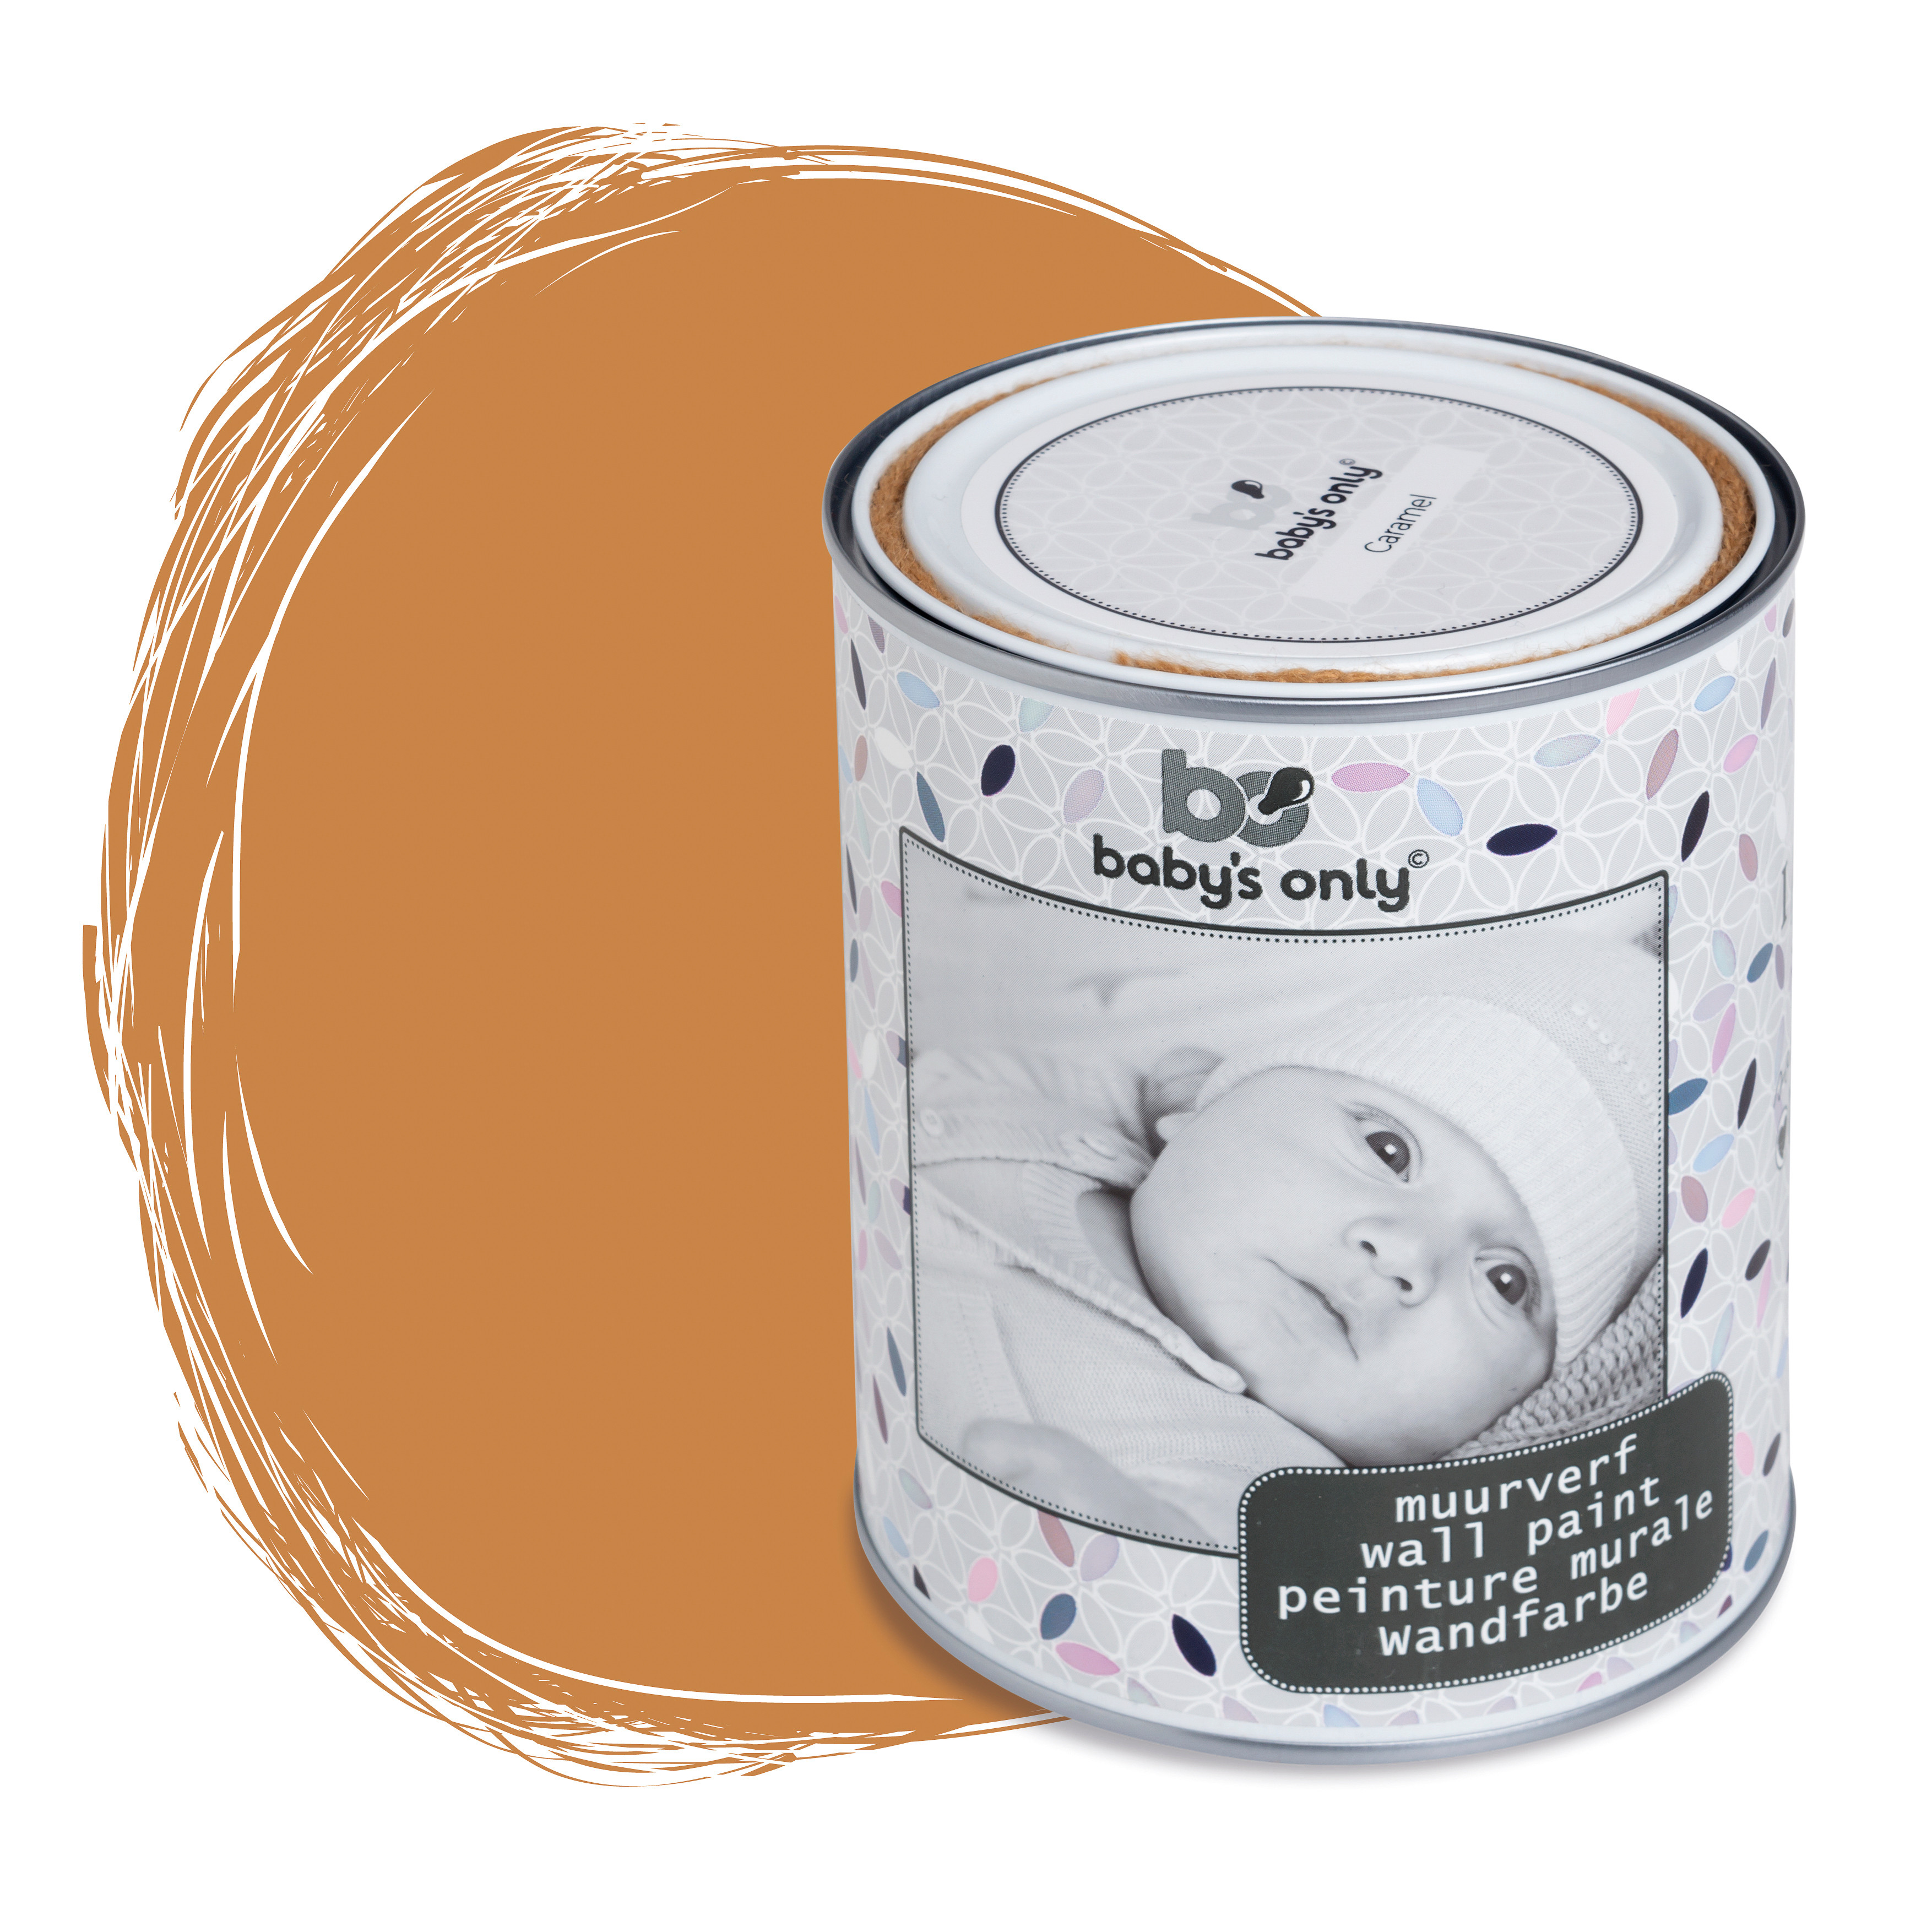 Wall paint caramel - 1 liter